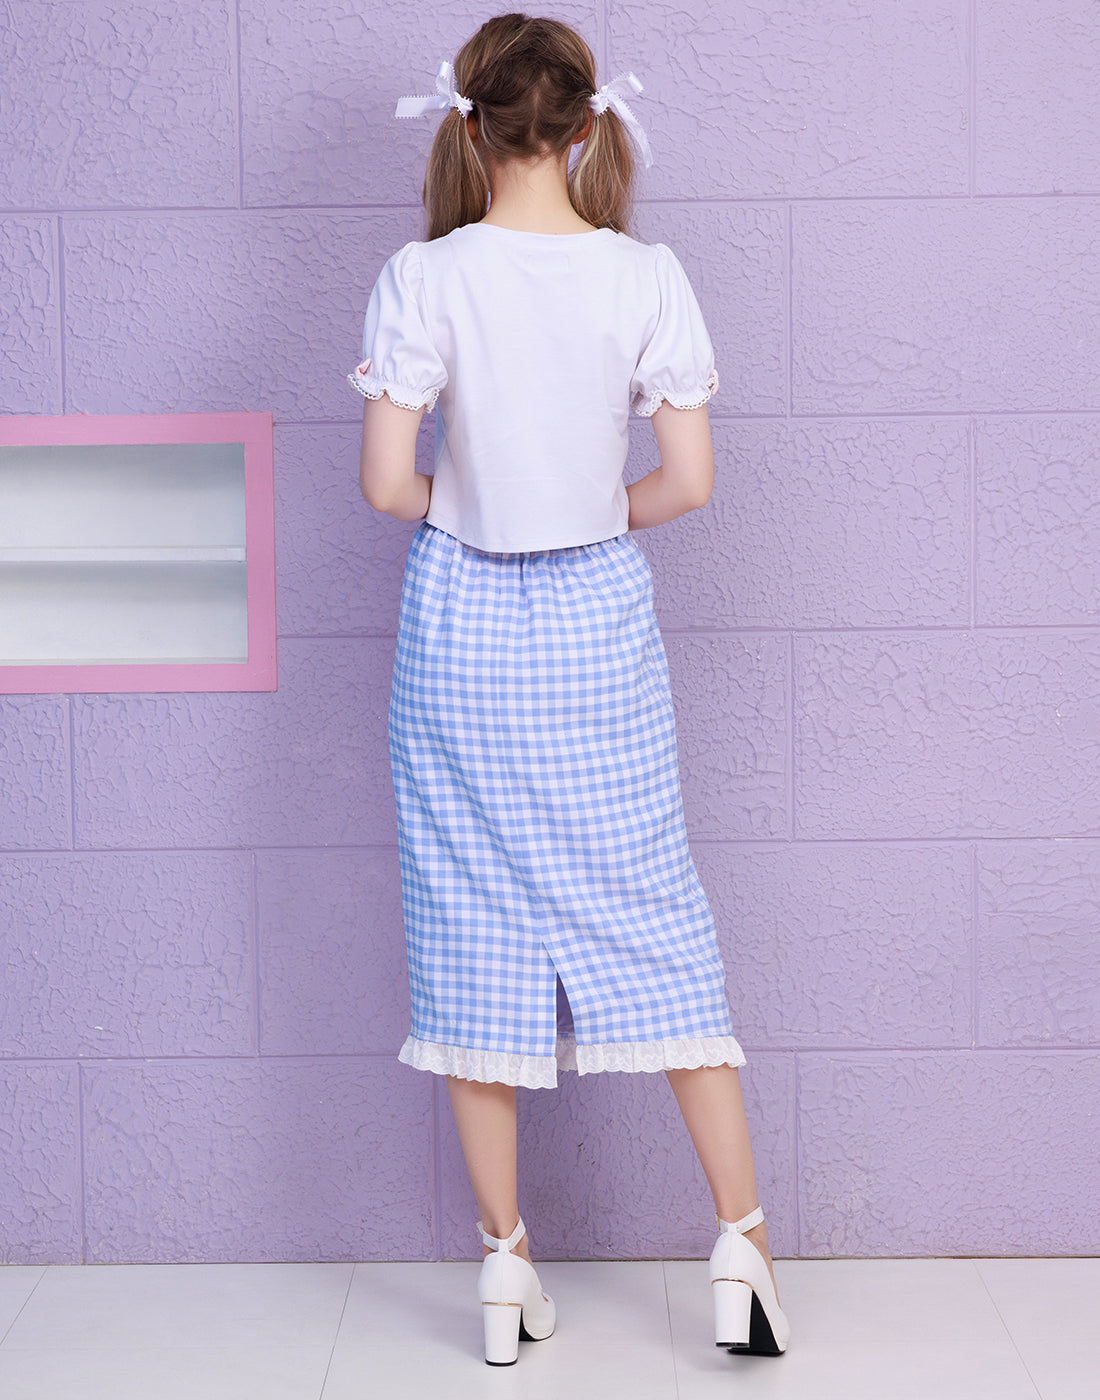 【3月発送】CANDY GIRL ギンガムチェックタイトスカート